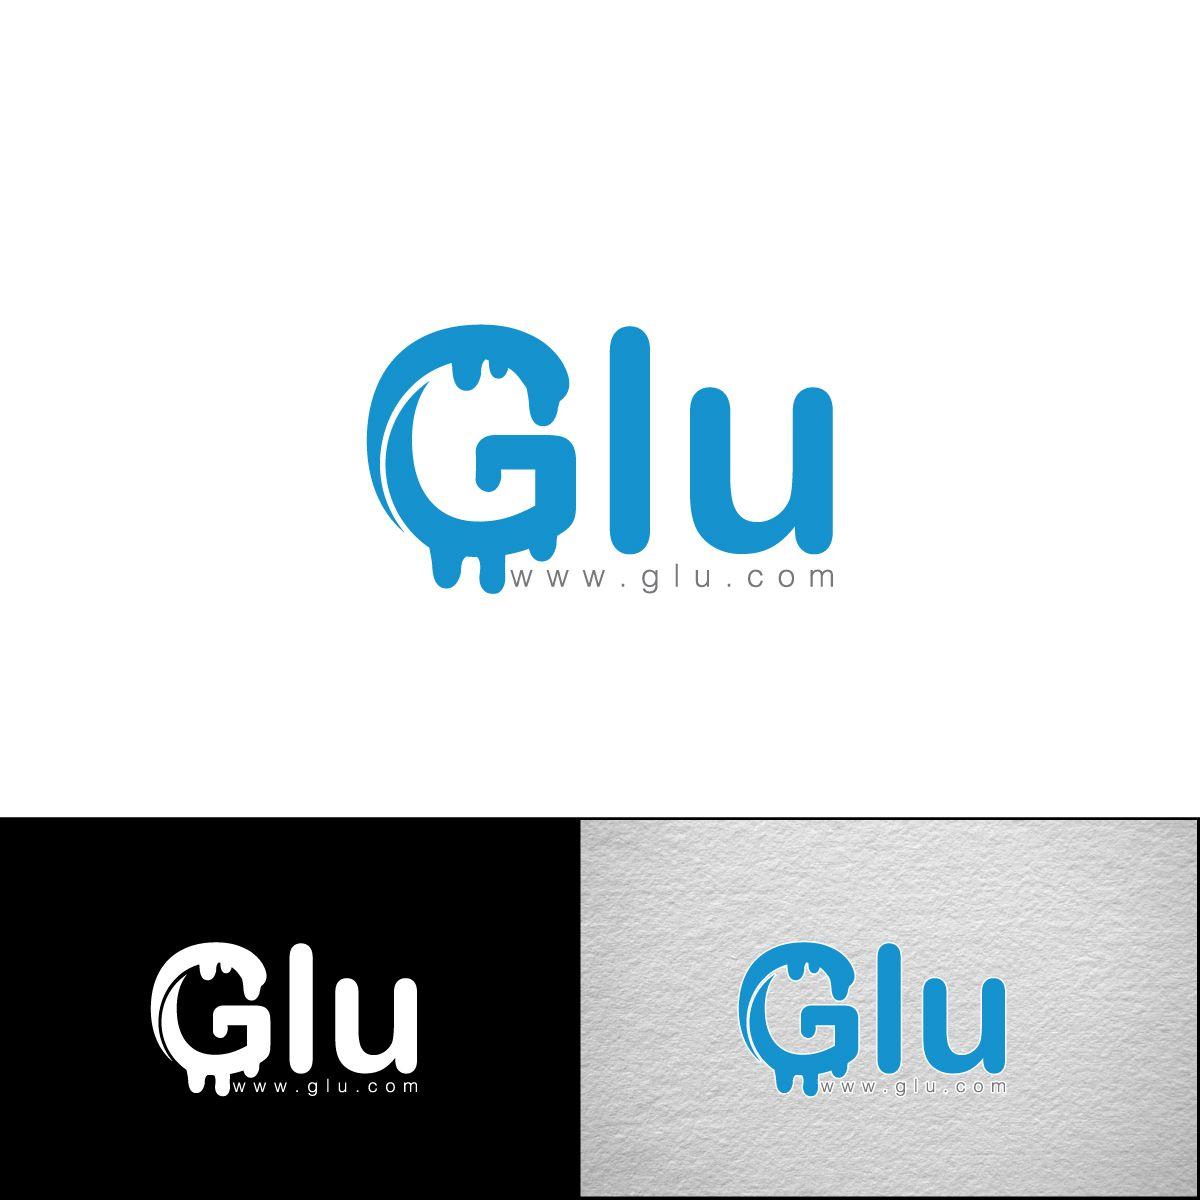 Glu Logo - Professional, Bold, Media Logo Design For Glu By E Graphics. Design